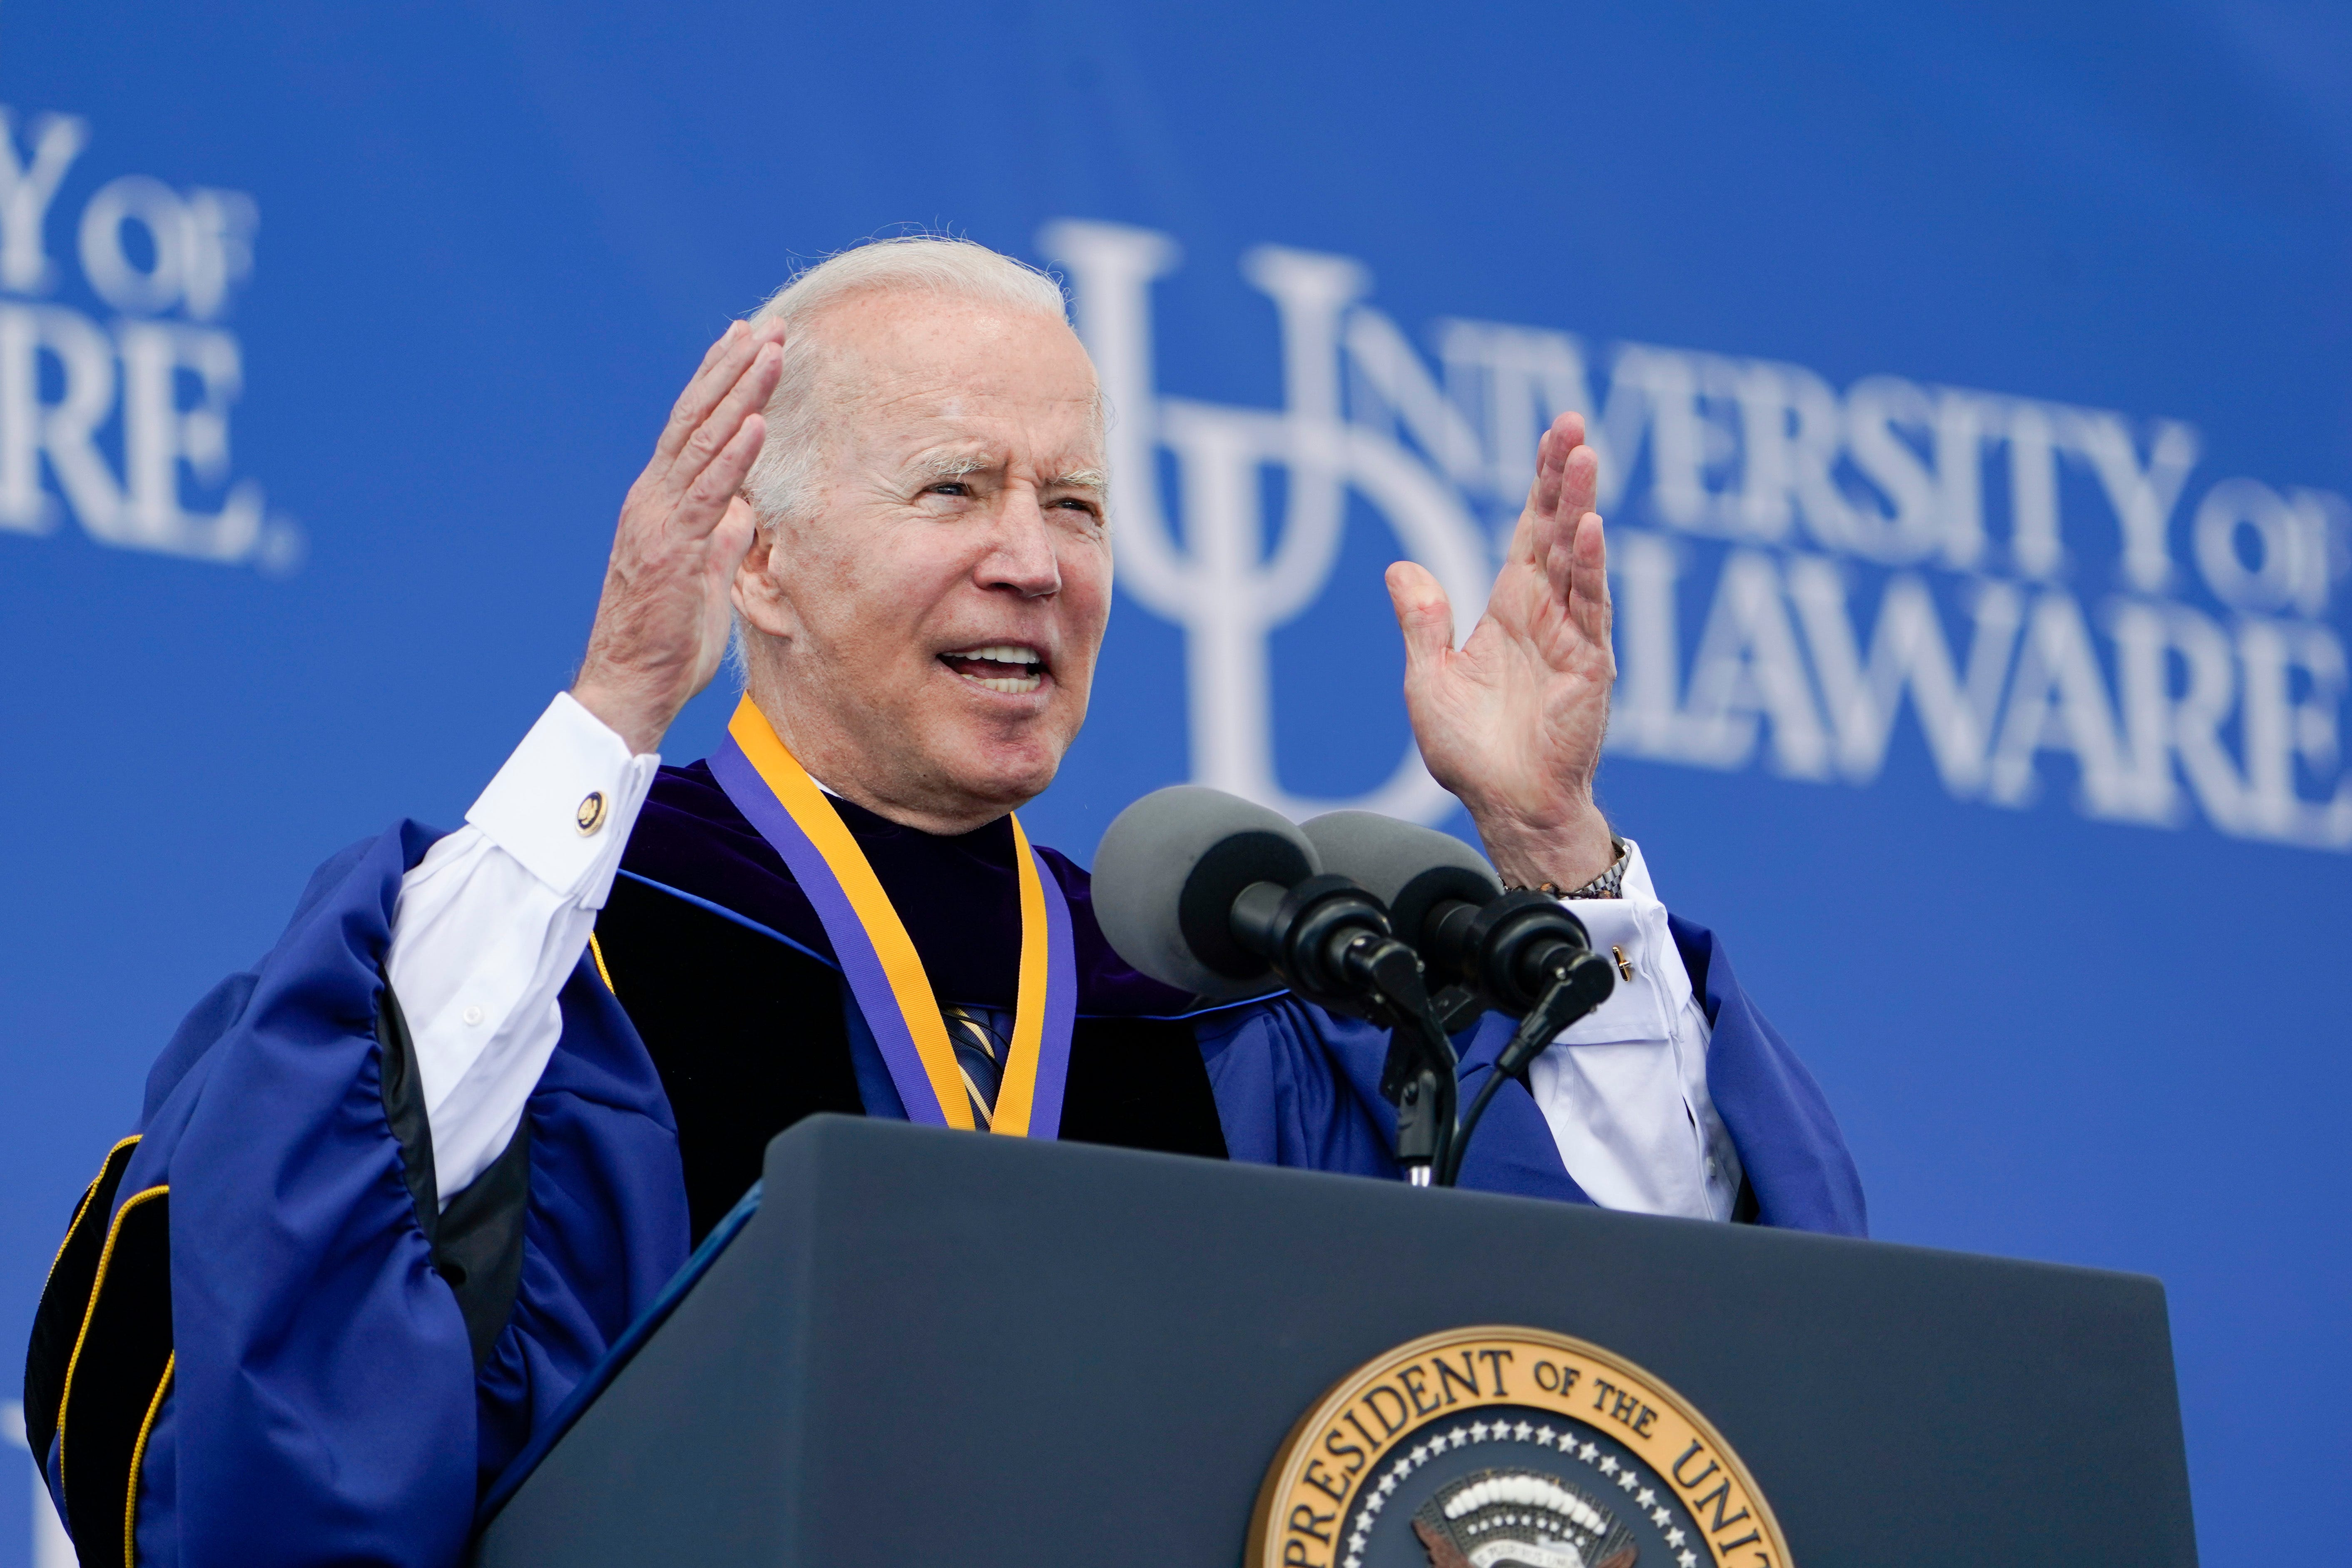 Where did Joe Biden to college? Here where Biden got degrees